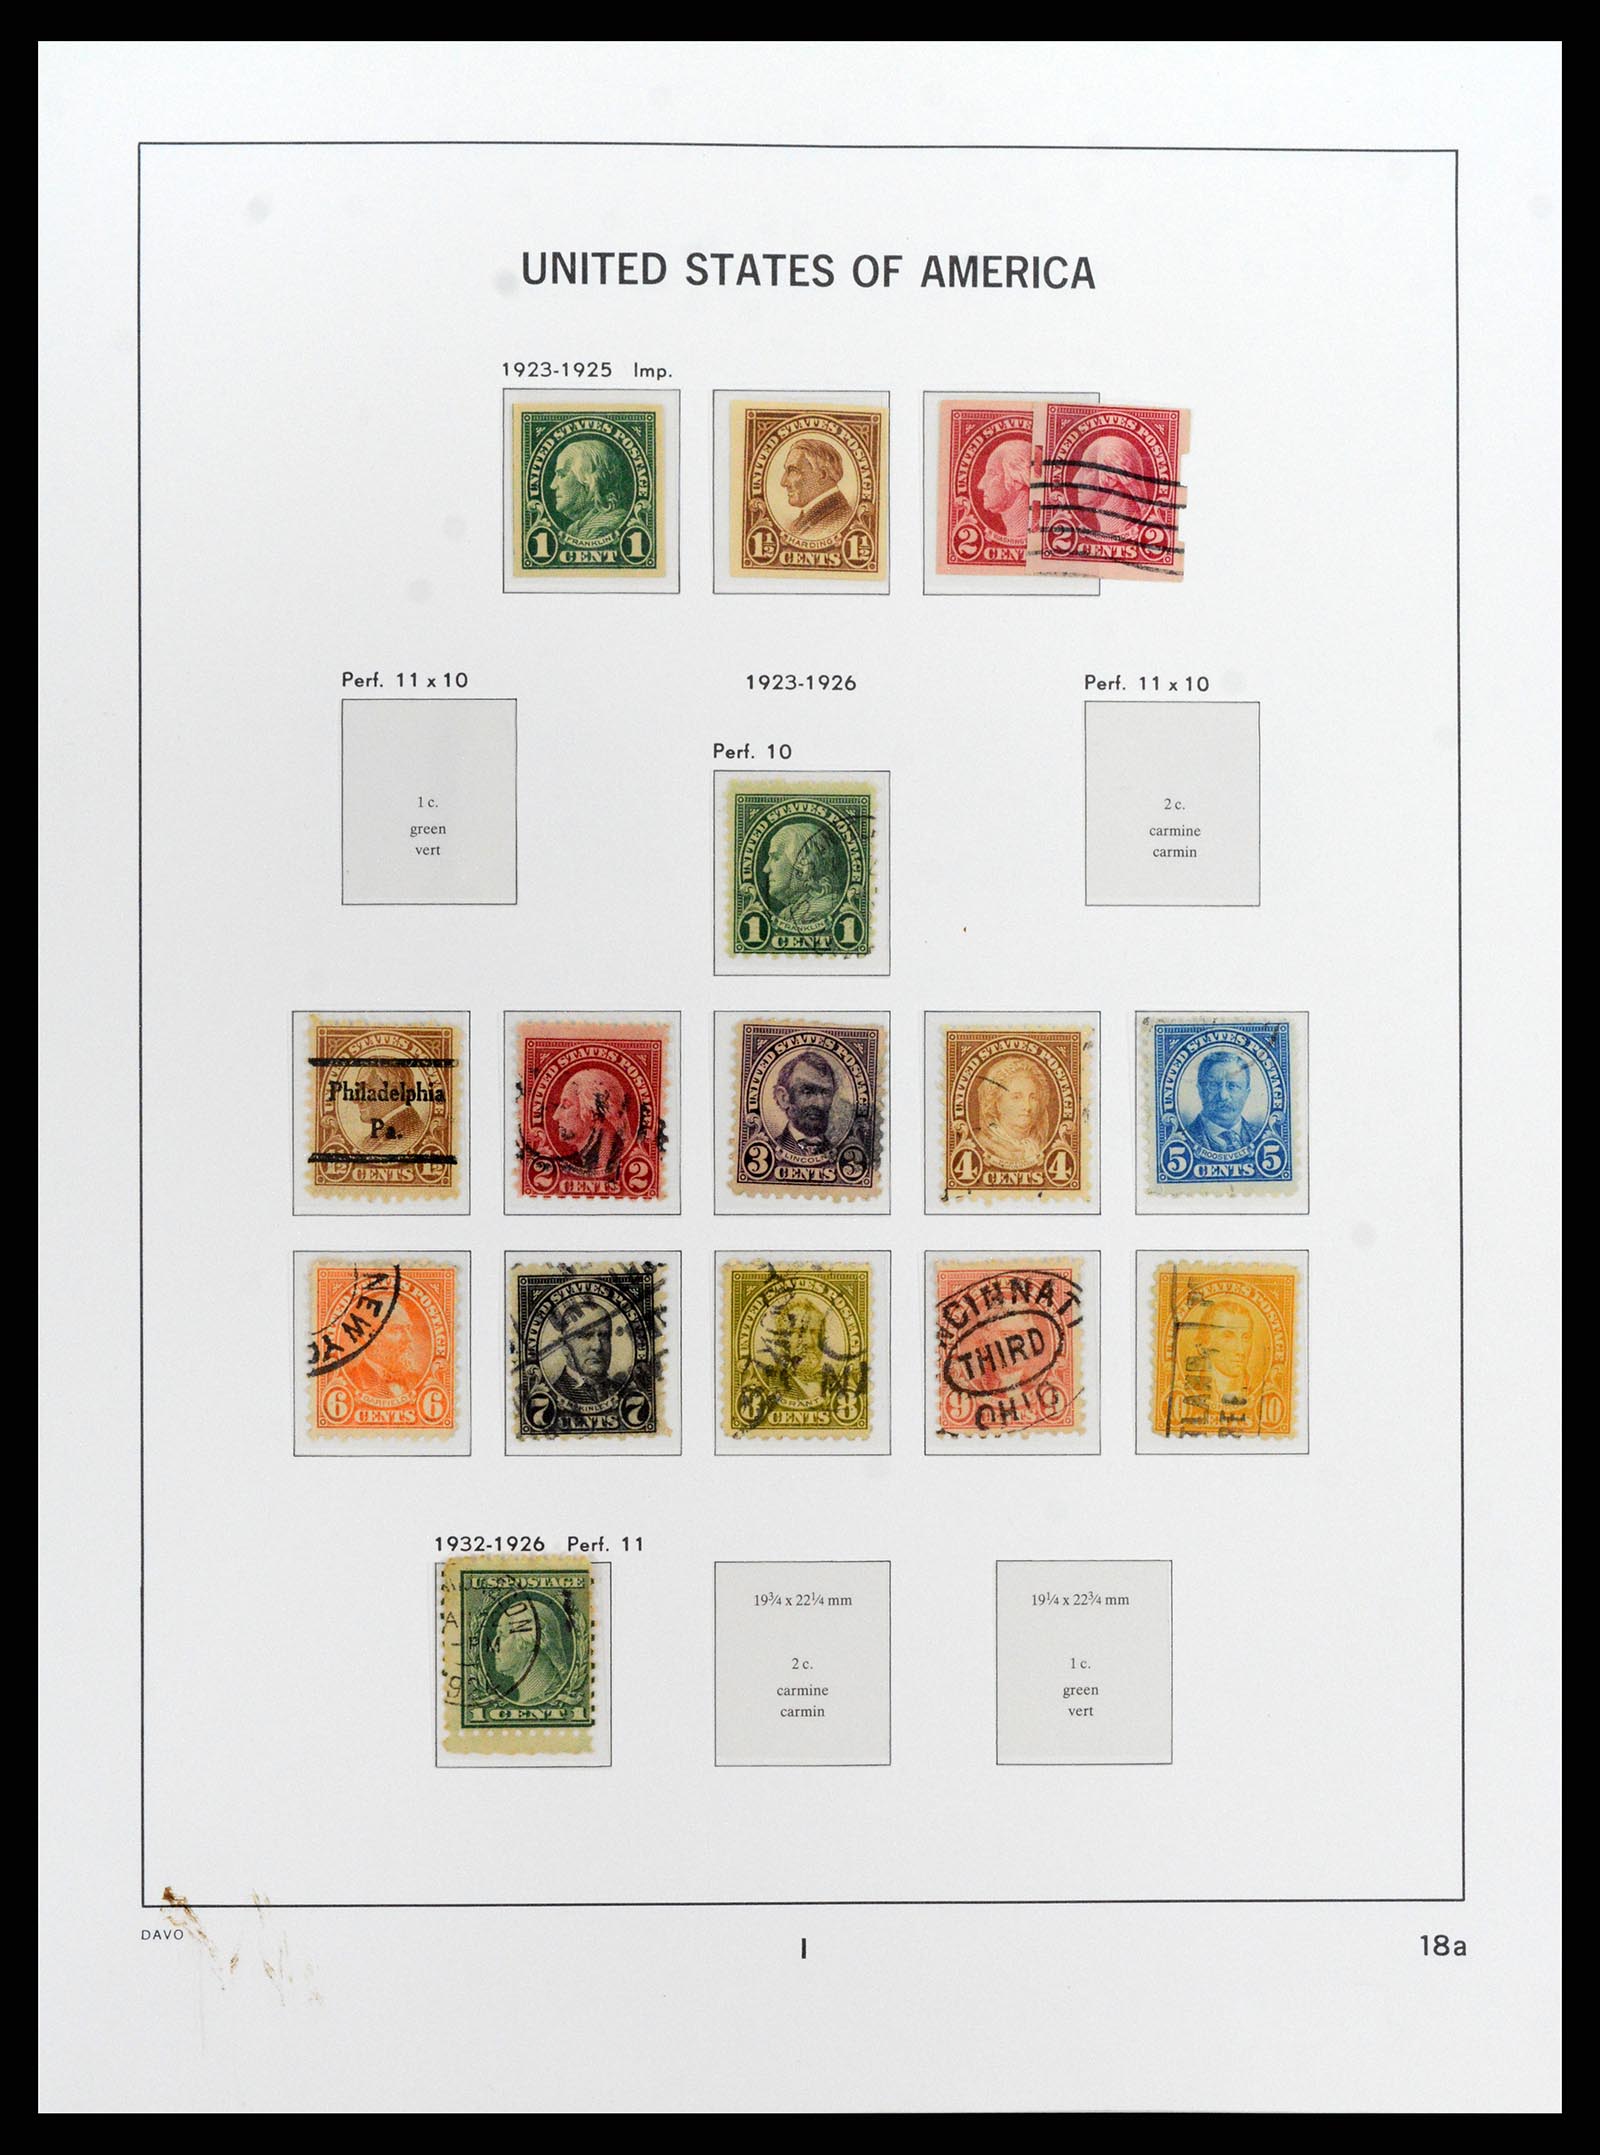 37810 028 - Stamp Collection 37810 USA 1851-2000.